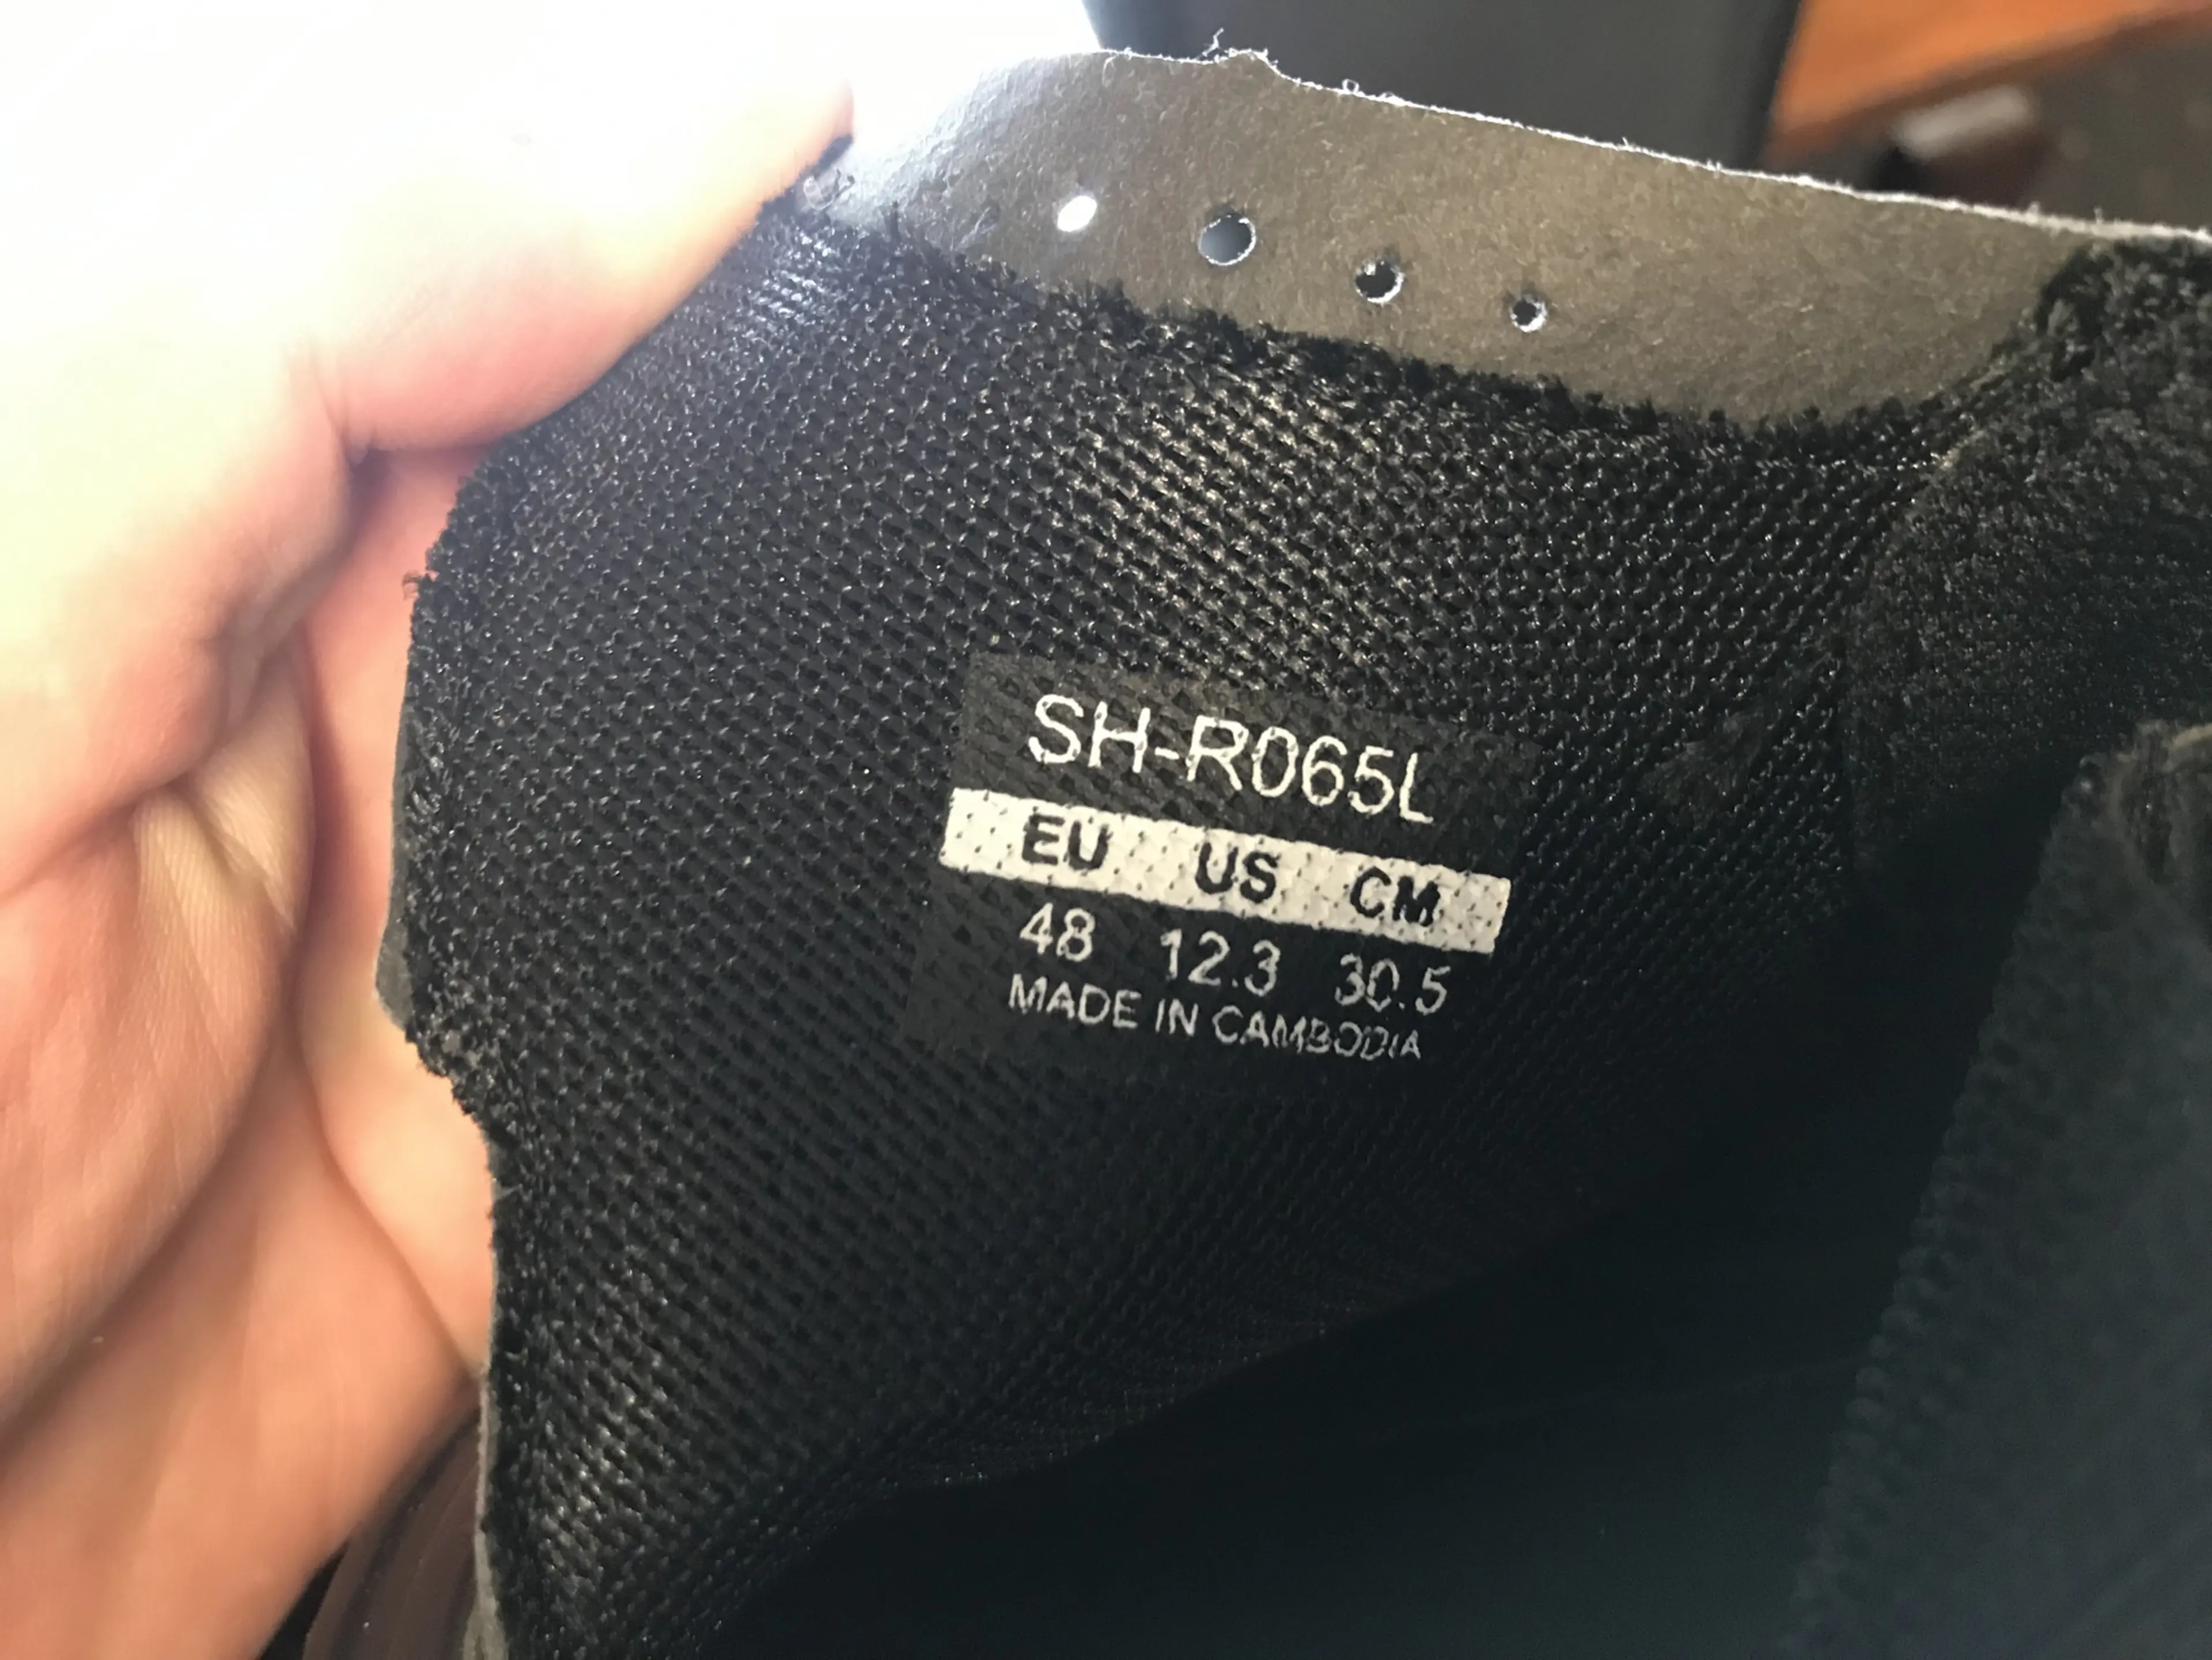 1. Pantofi Shimano SH-R065L nr 48, 30.5 cm